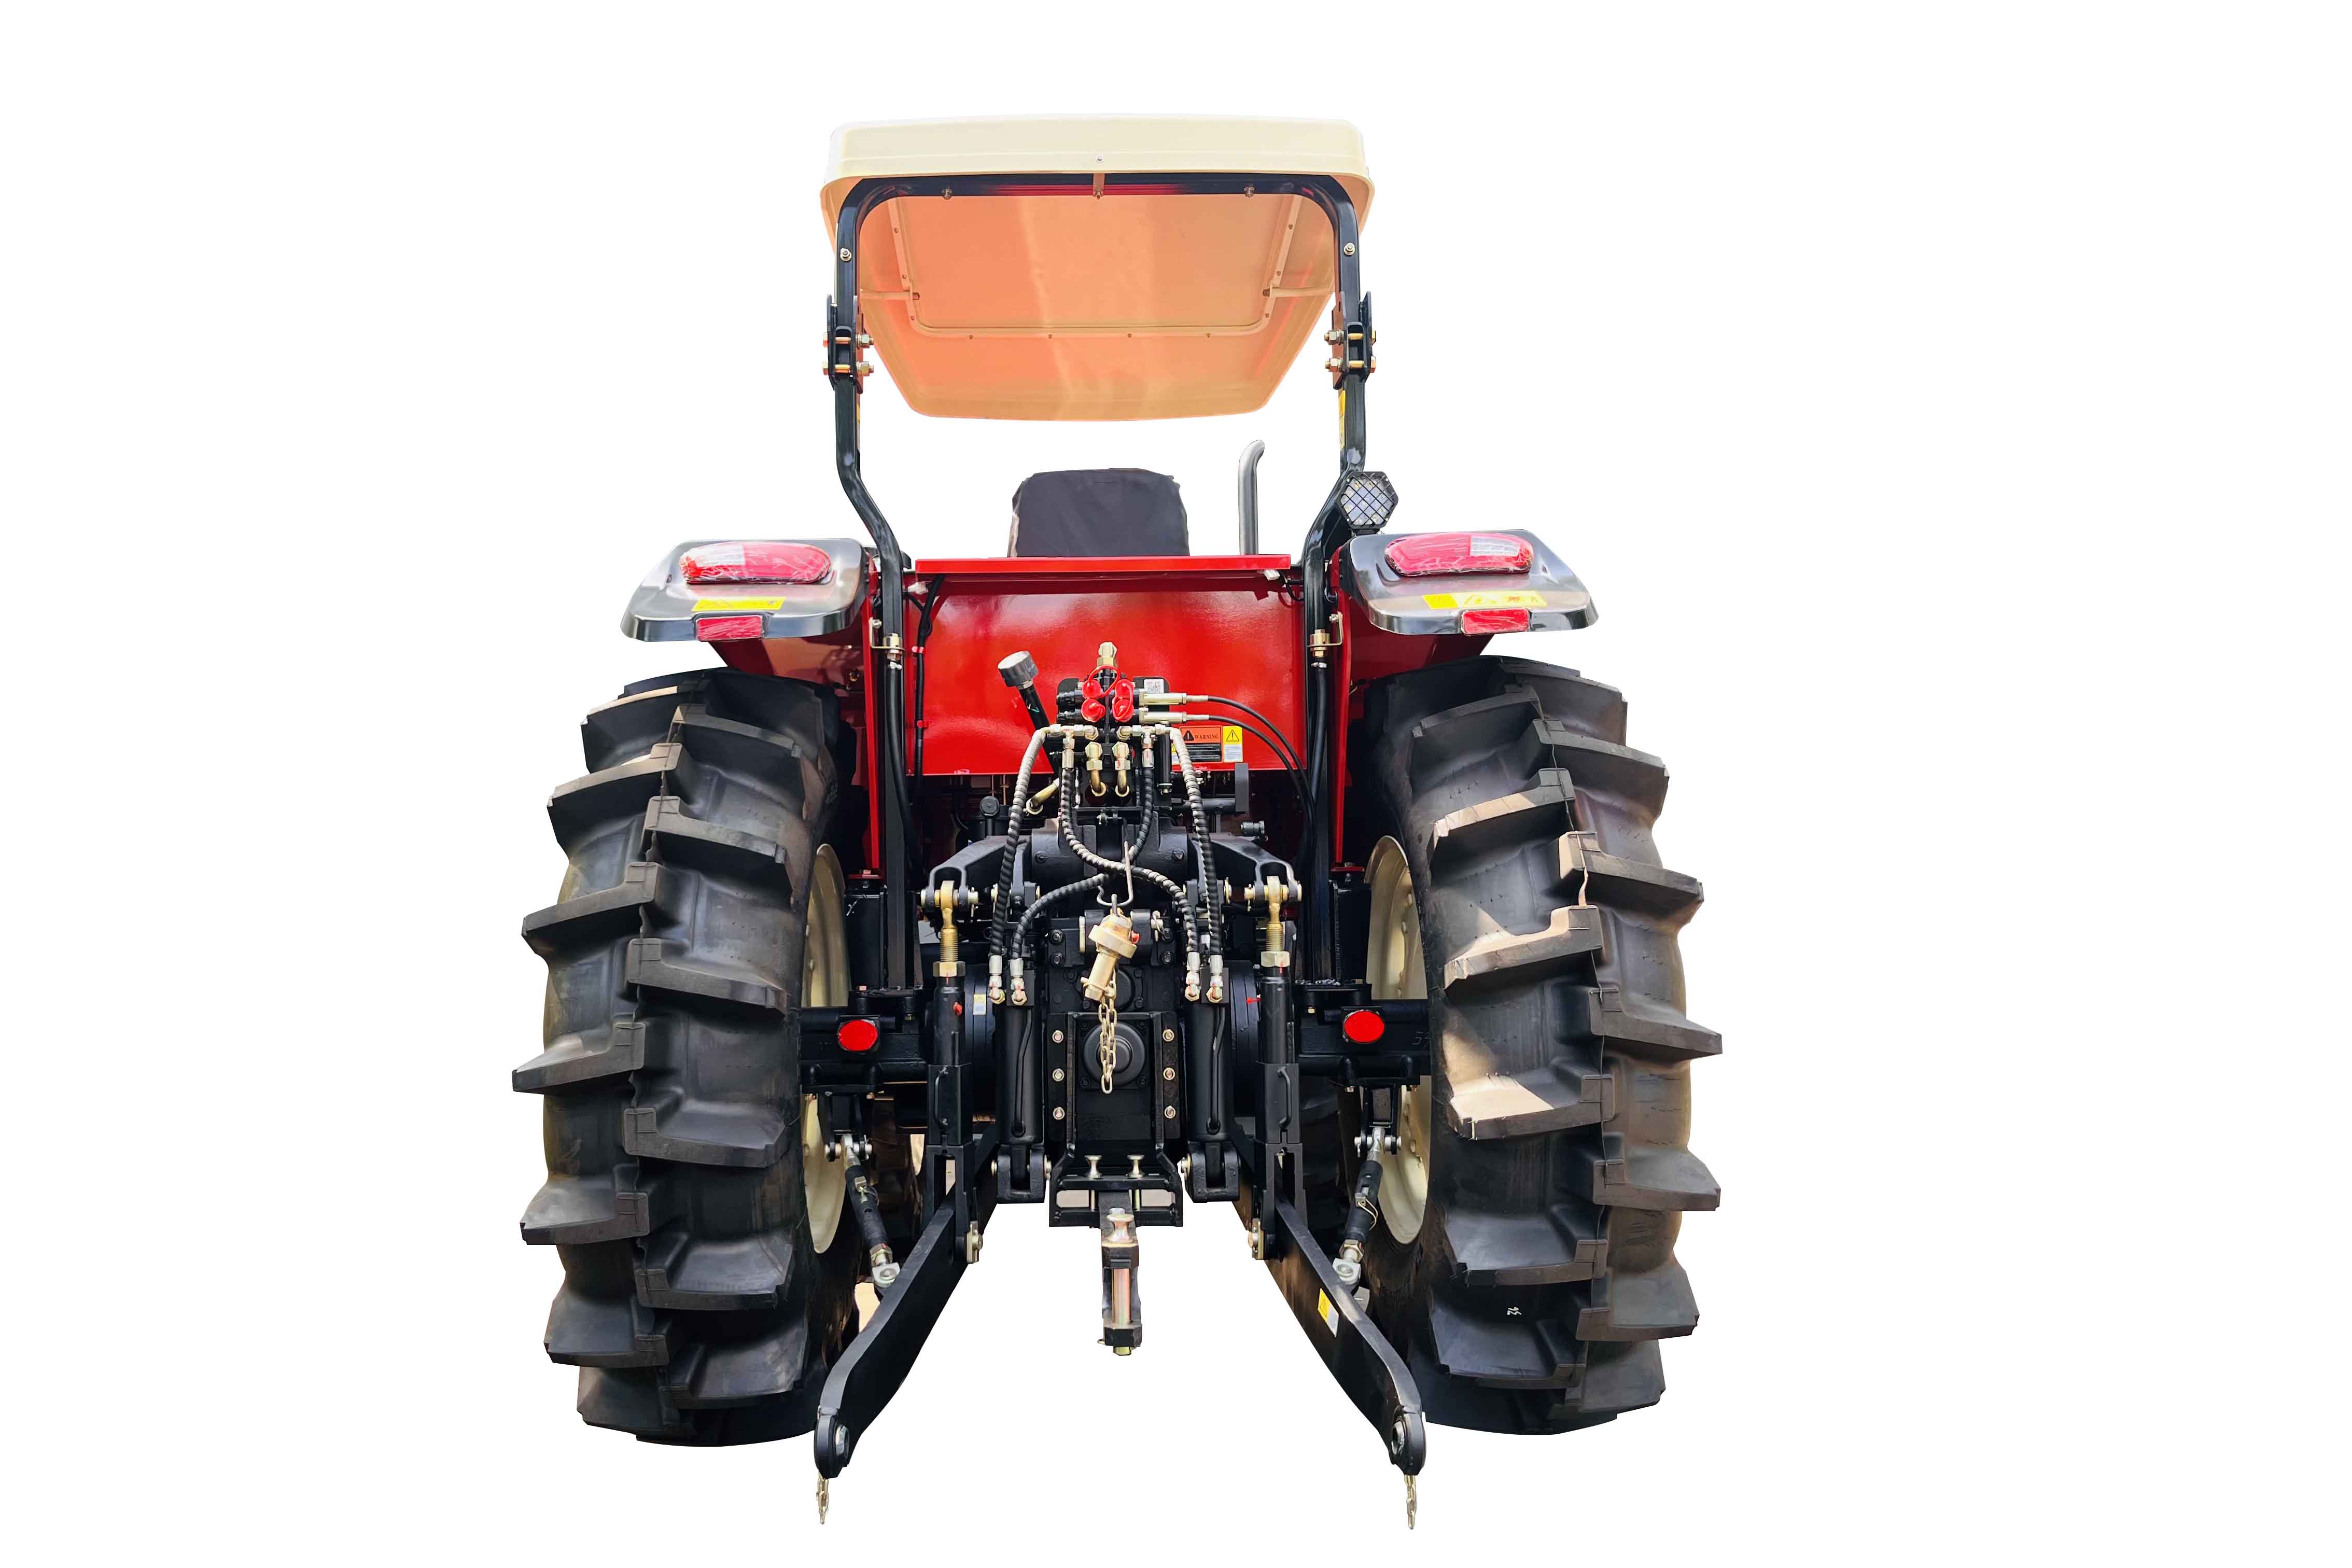 FMWORLD Tractor - 1404M-3